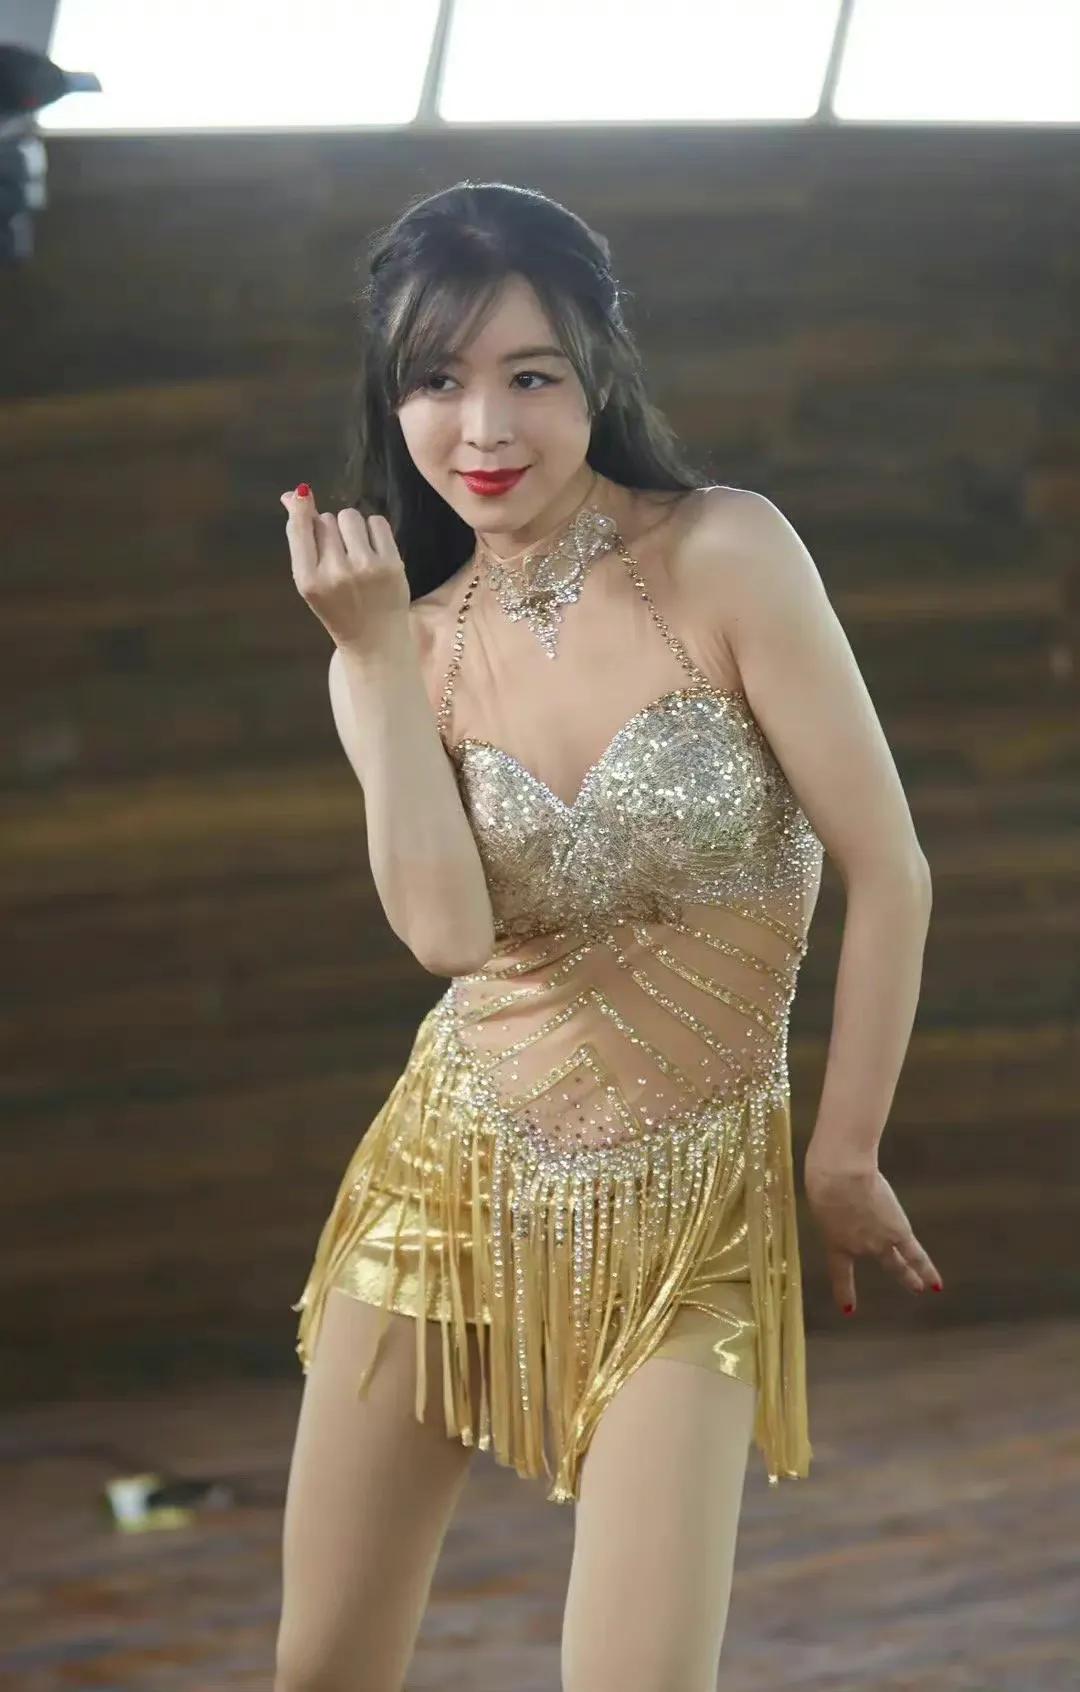 Beauty star Zhang Jingchu sexy photo - iNEWS